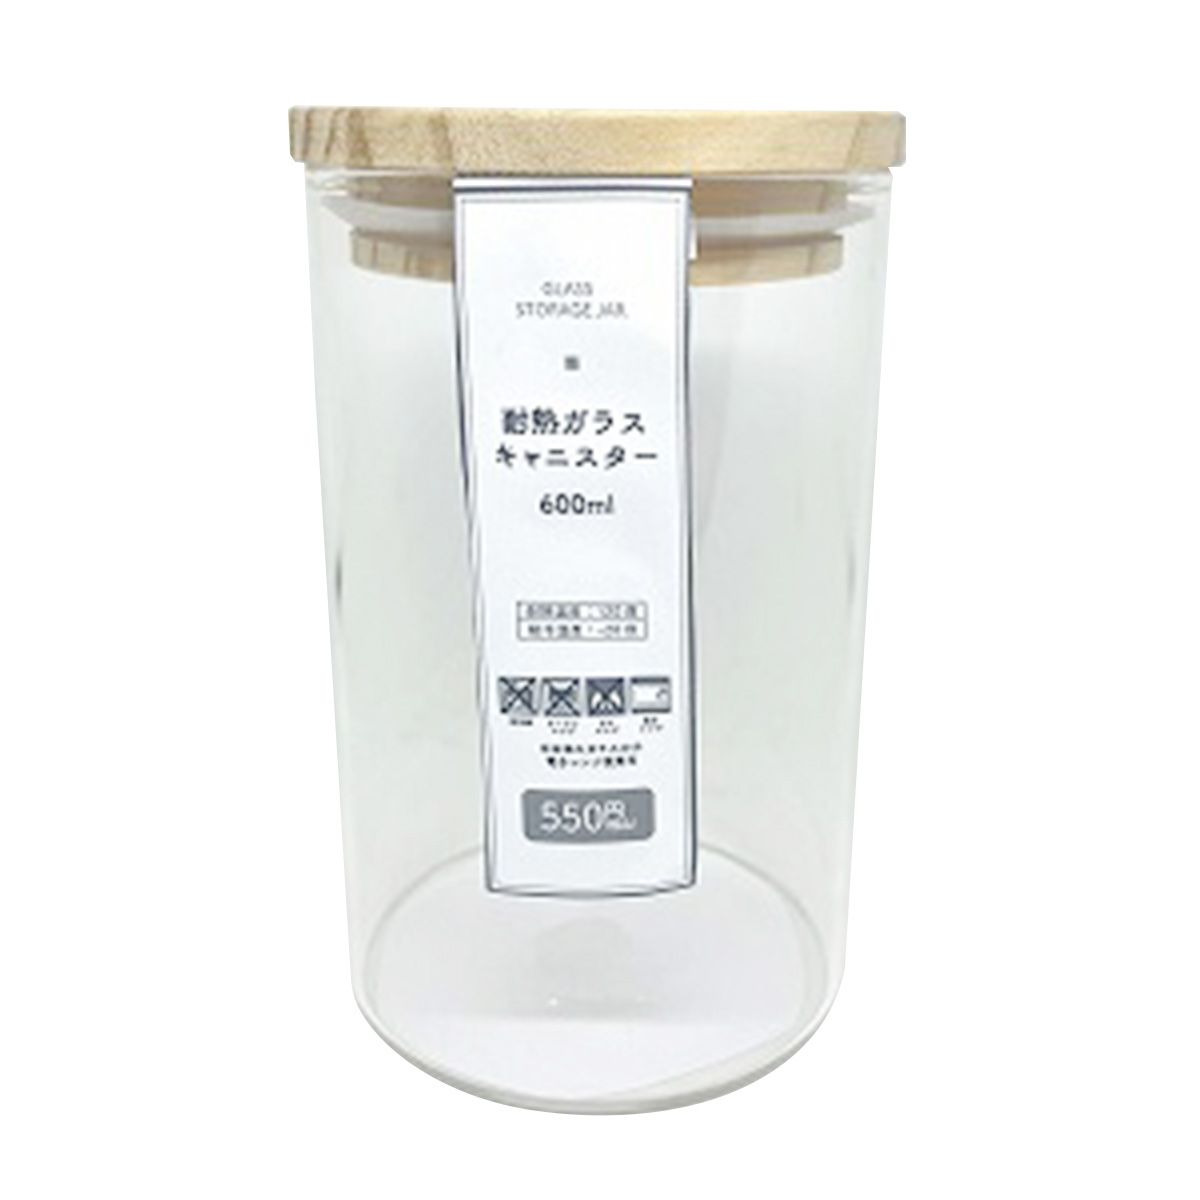 ガラス瓶 キャニスター 食品保存容器 ストック容器 耐熱ガラス キャニスター 600ml 351010